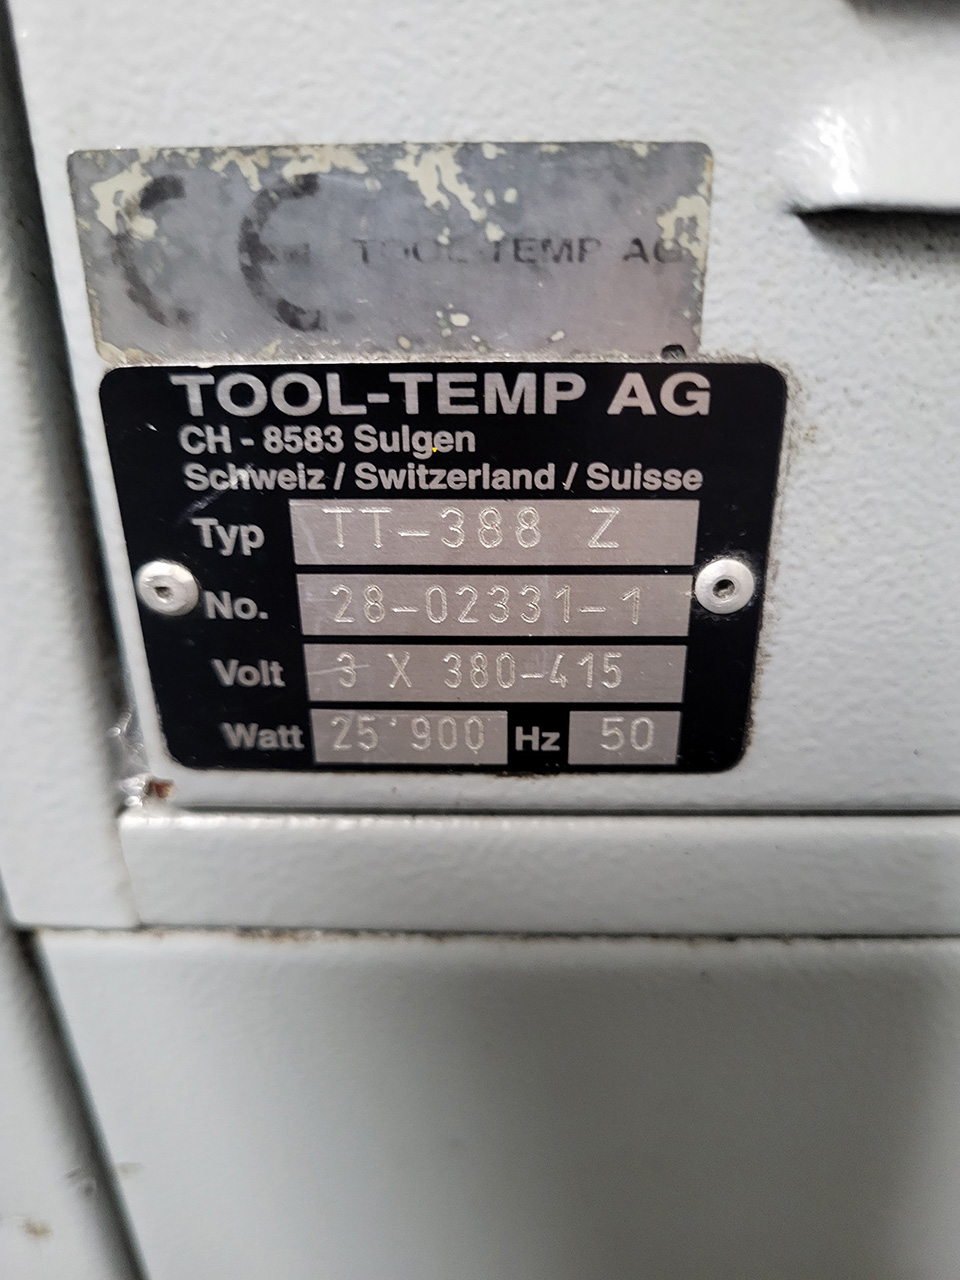 Блок управления температурой ToolTemp TT-388 ZU2230, б/у